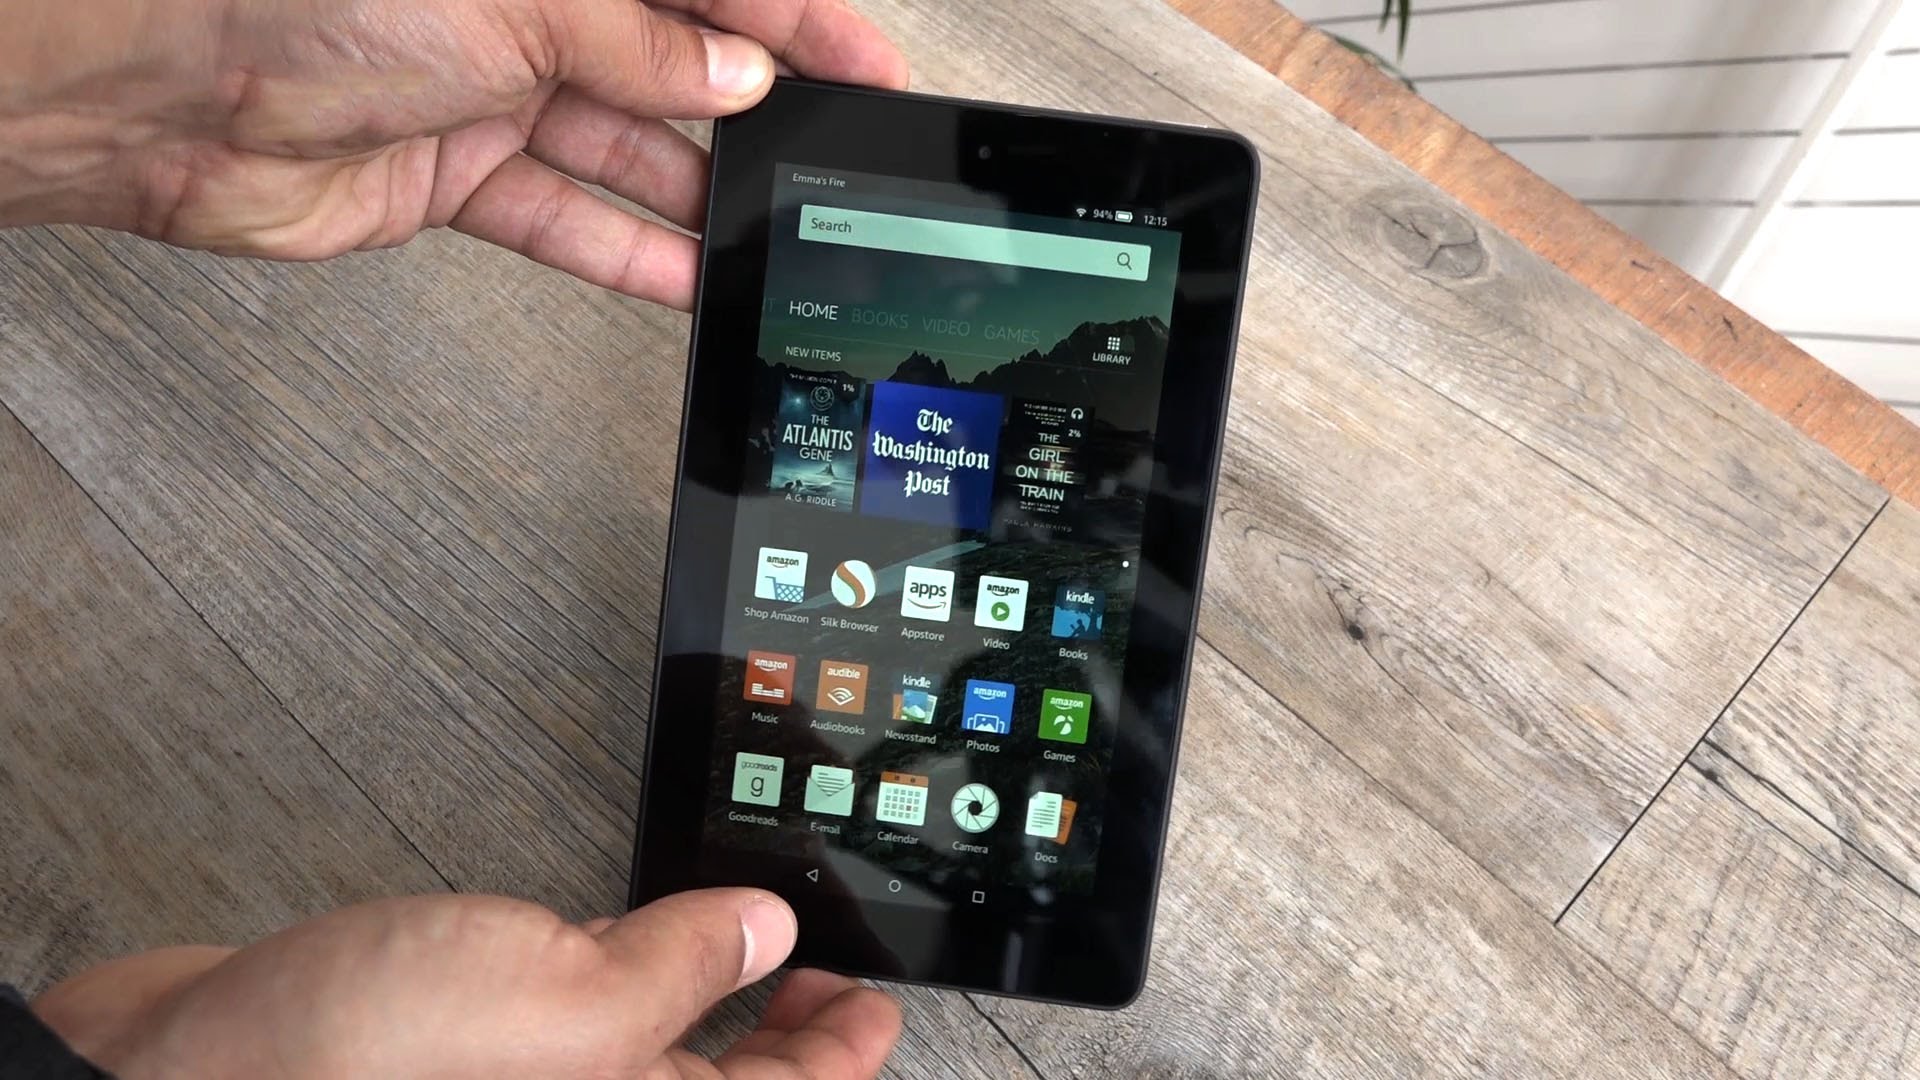 Amazon Fire - 60-Euro-Tablet im Hands-On (deutsch) - GIGA.DE - YouTube